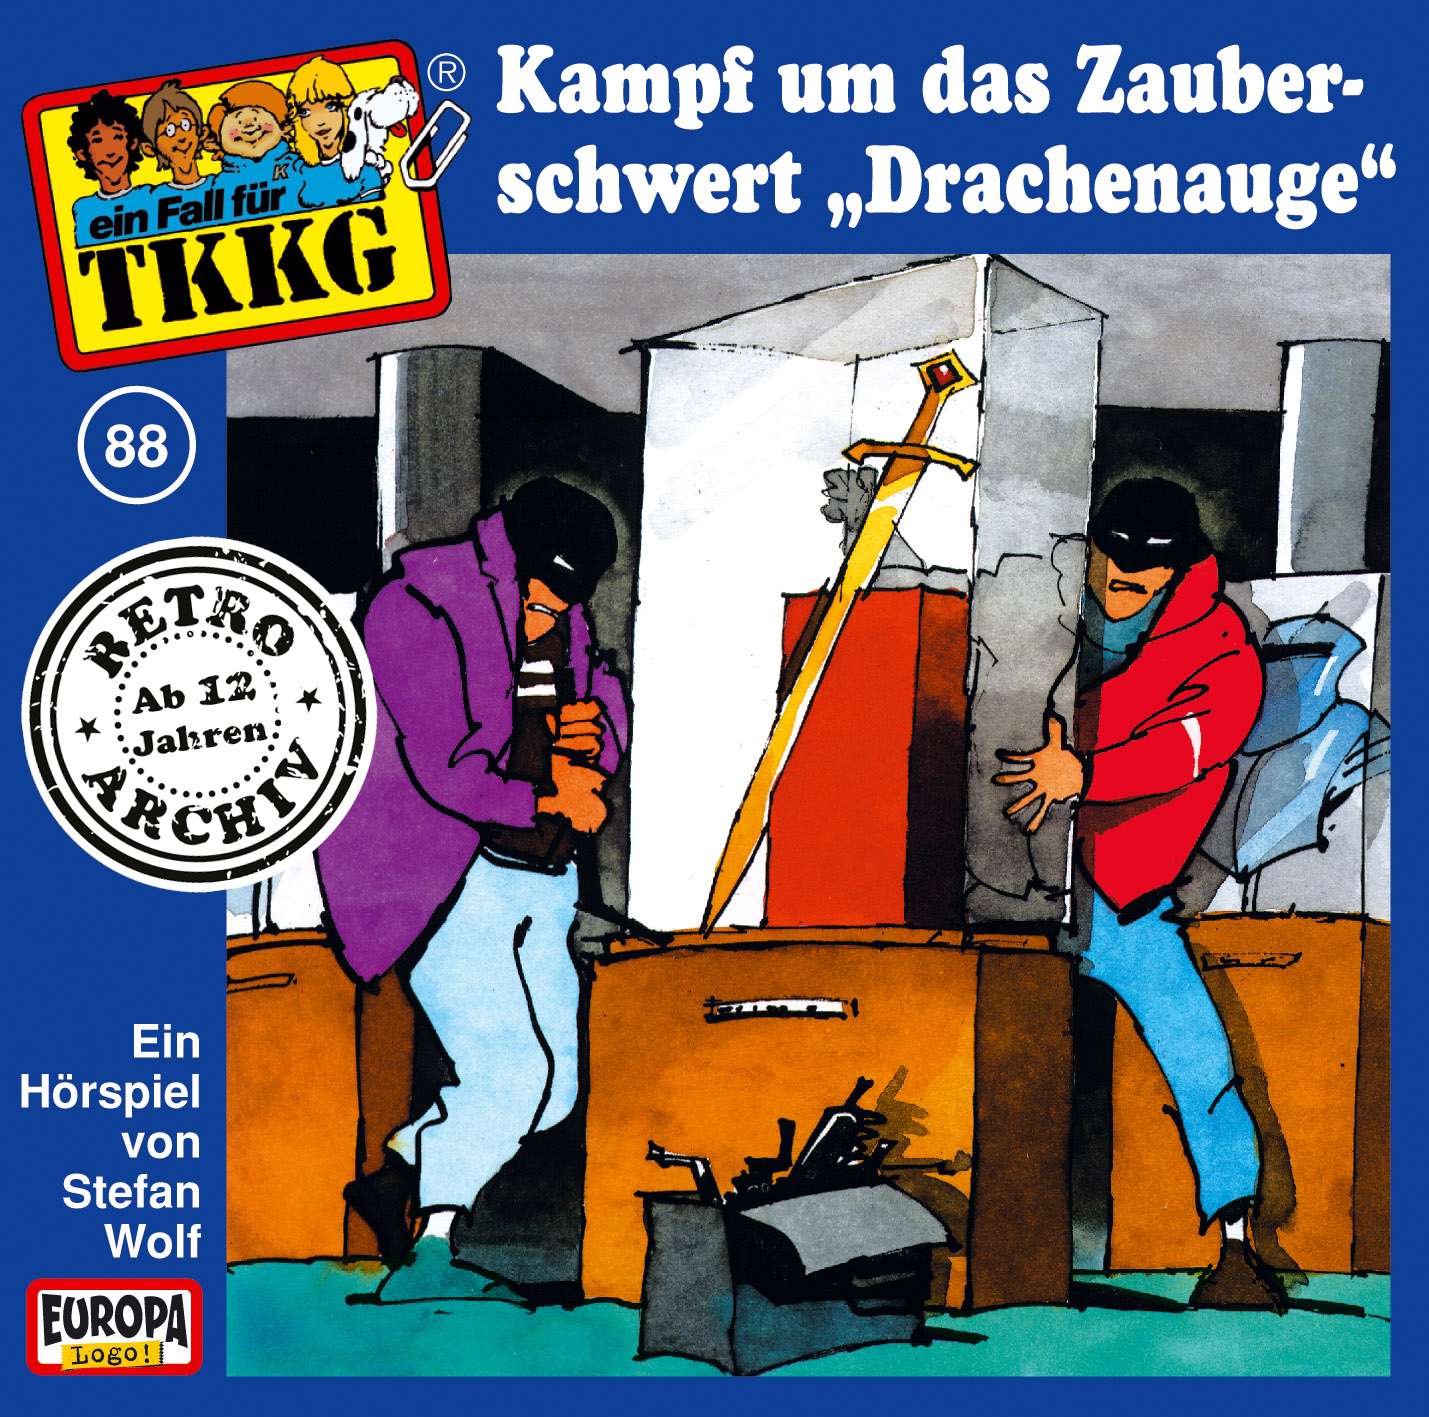 TKKG Retro-Archiv - Der Kampf um das Zauberschwert